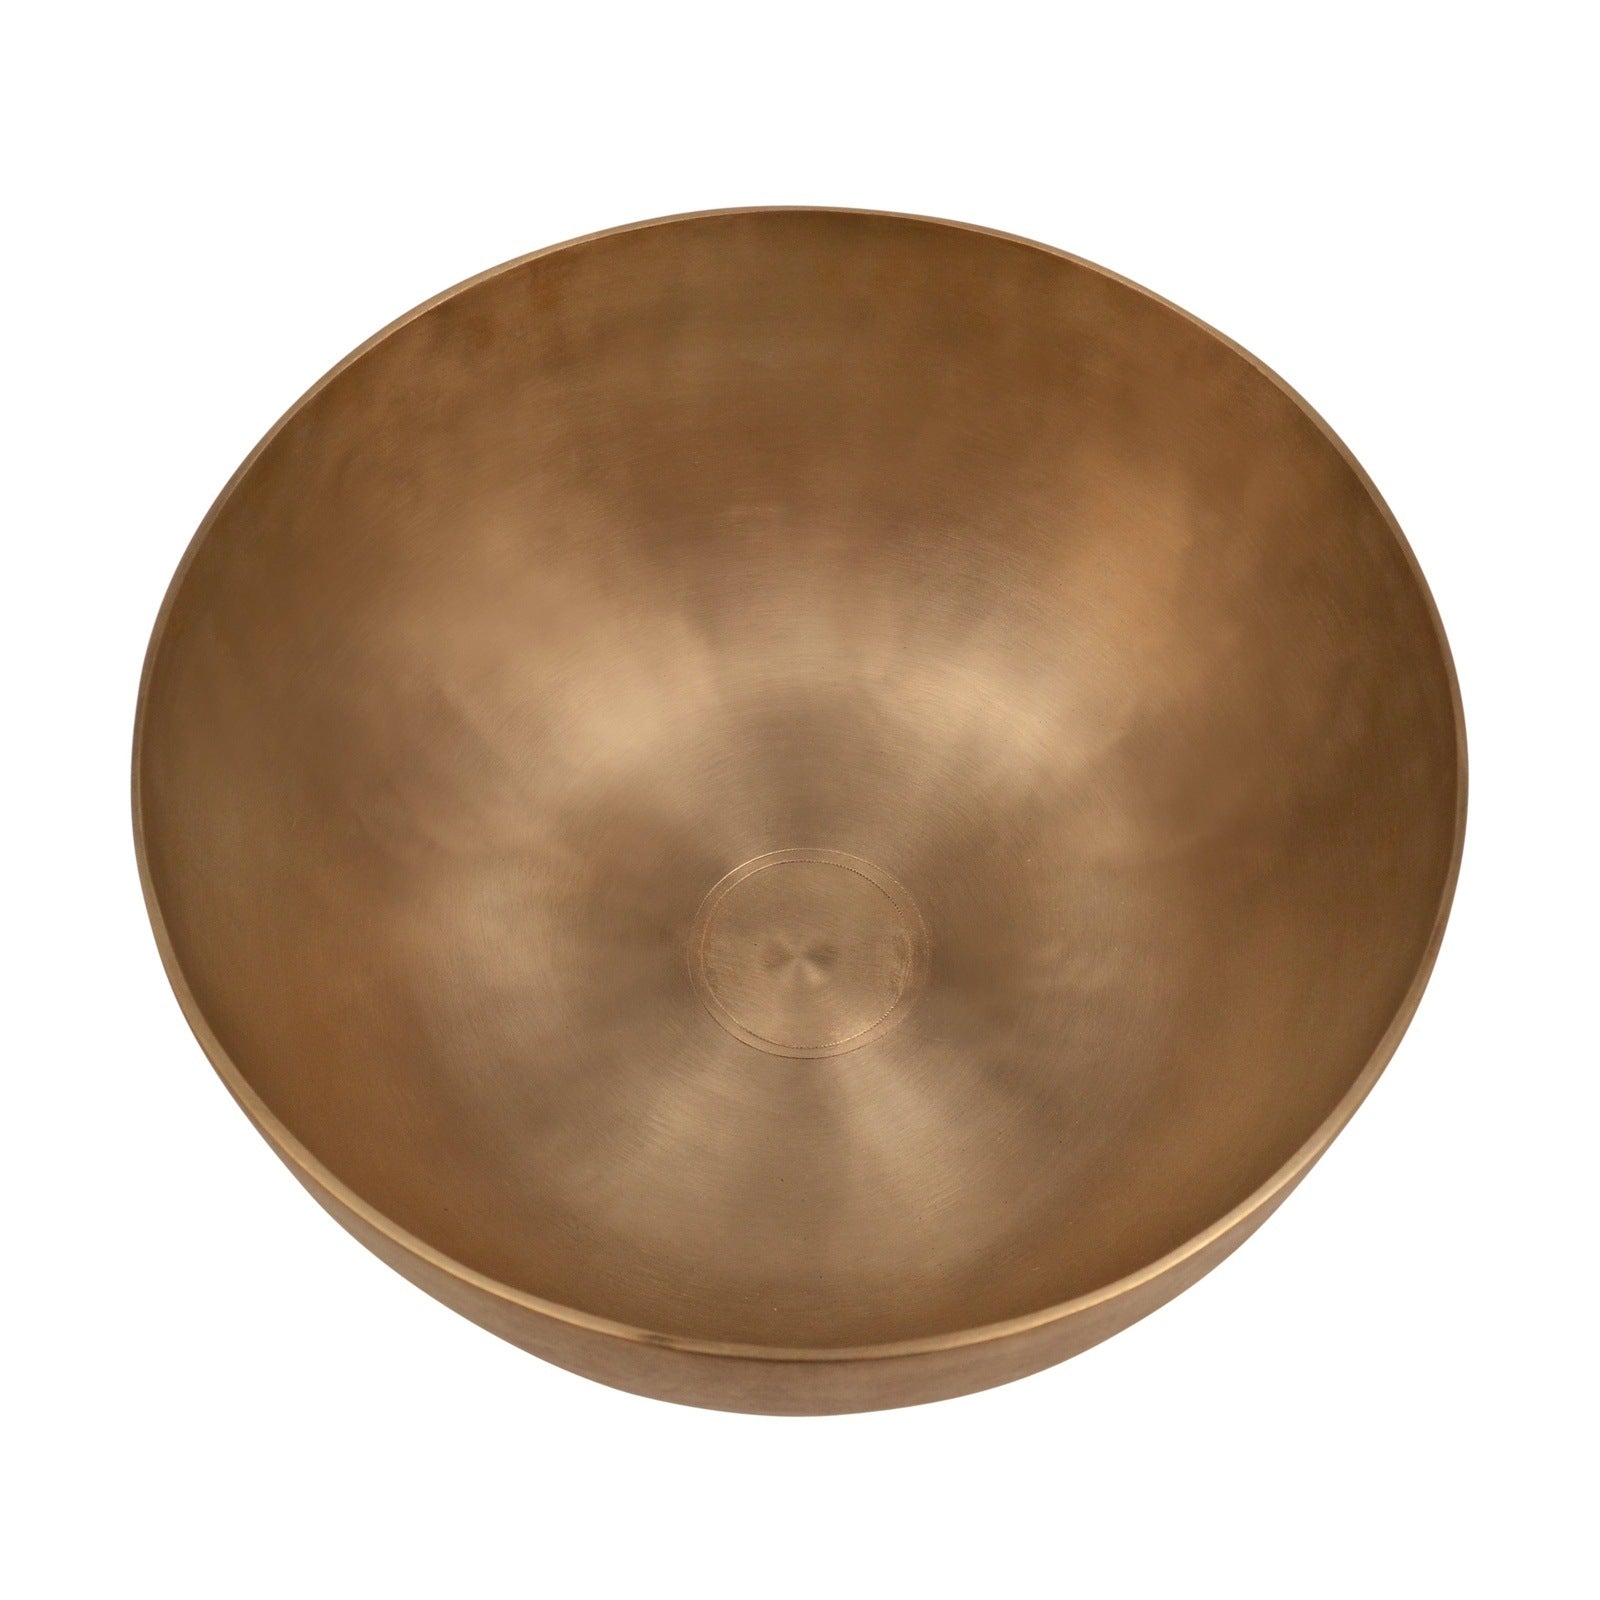 Tibetan Singing Bowl. 10" $325. Solar Plexus